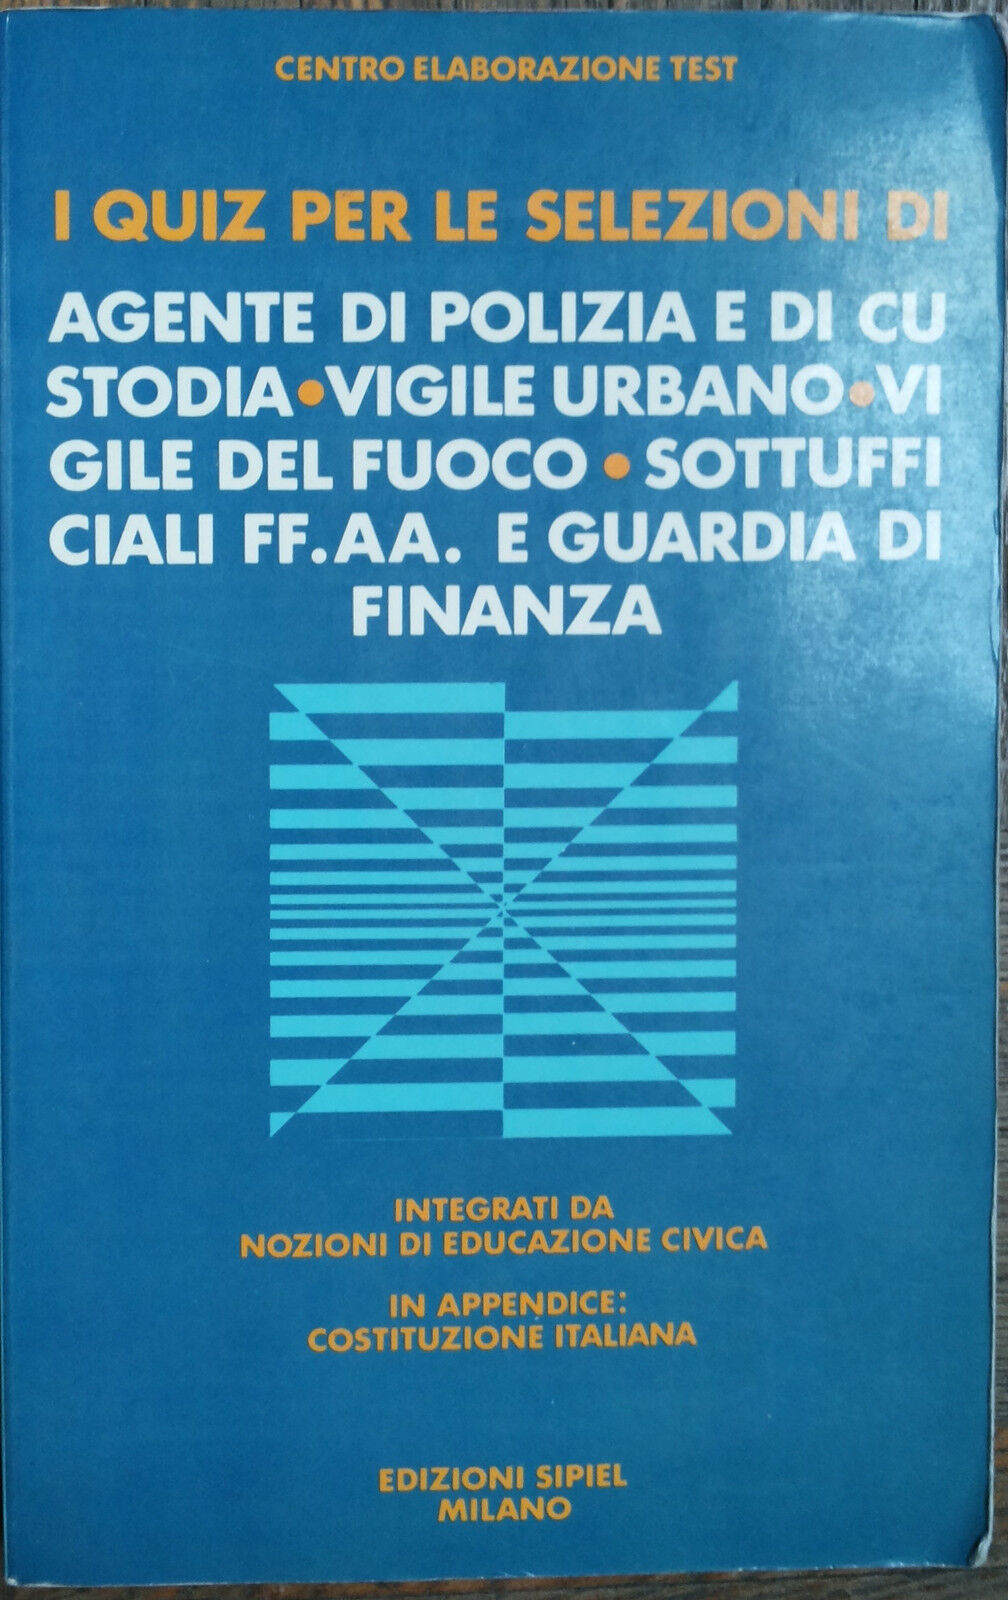 I quiz per le selezioni - AA.VV. - Edizioni SIPIEL,1987 - R